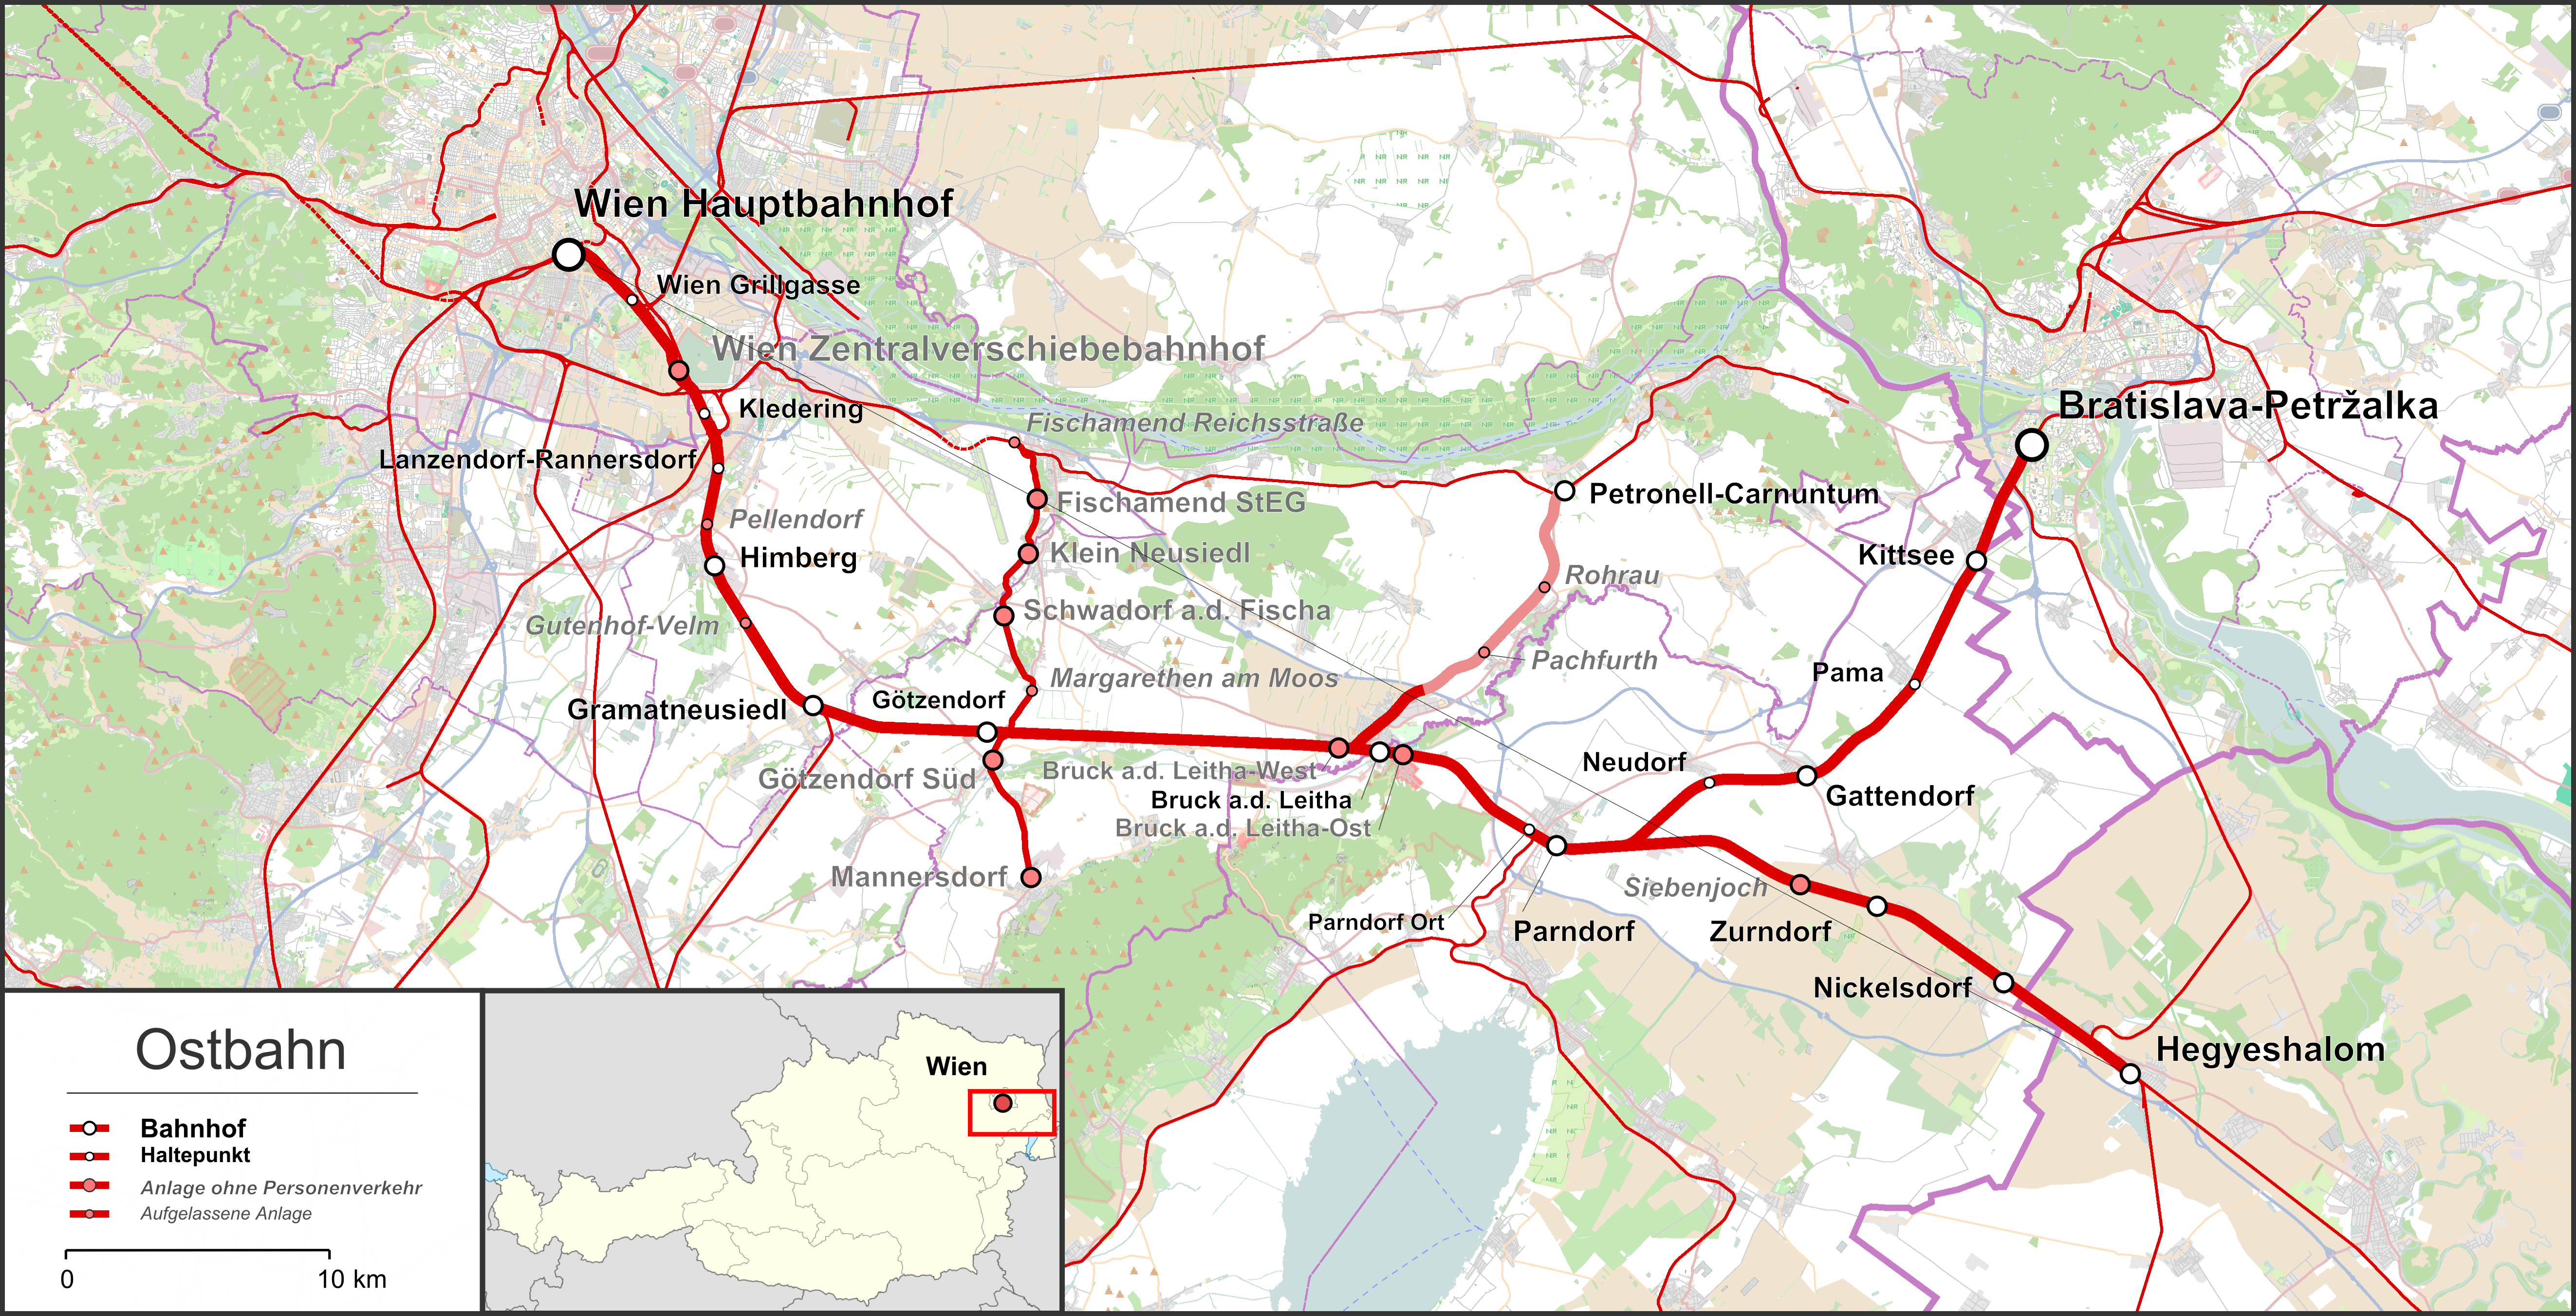 Übersichtskarte über die Ostbahn und die diversen Anschluss bzw. Nebenbahnen. Map data (c) OpenStreetMap (and) contributors, CC-BY-SA